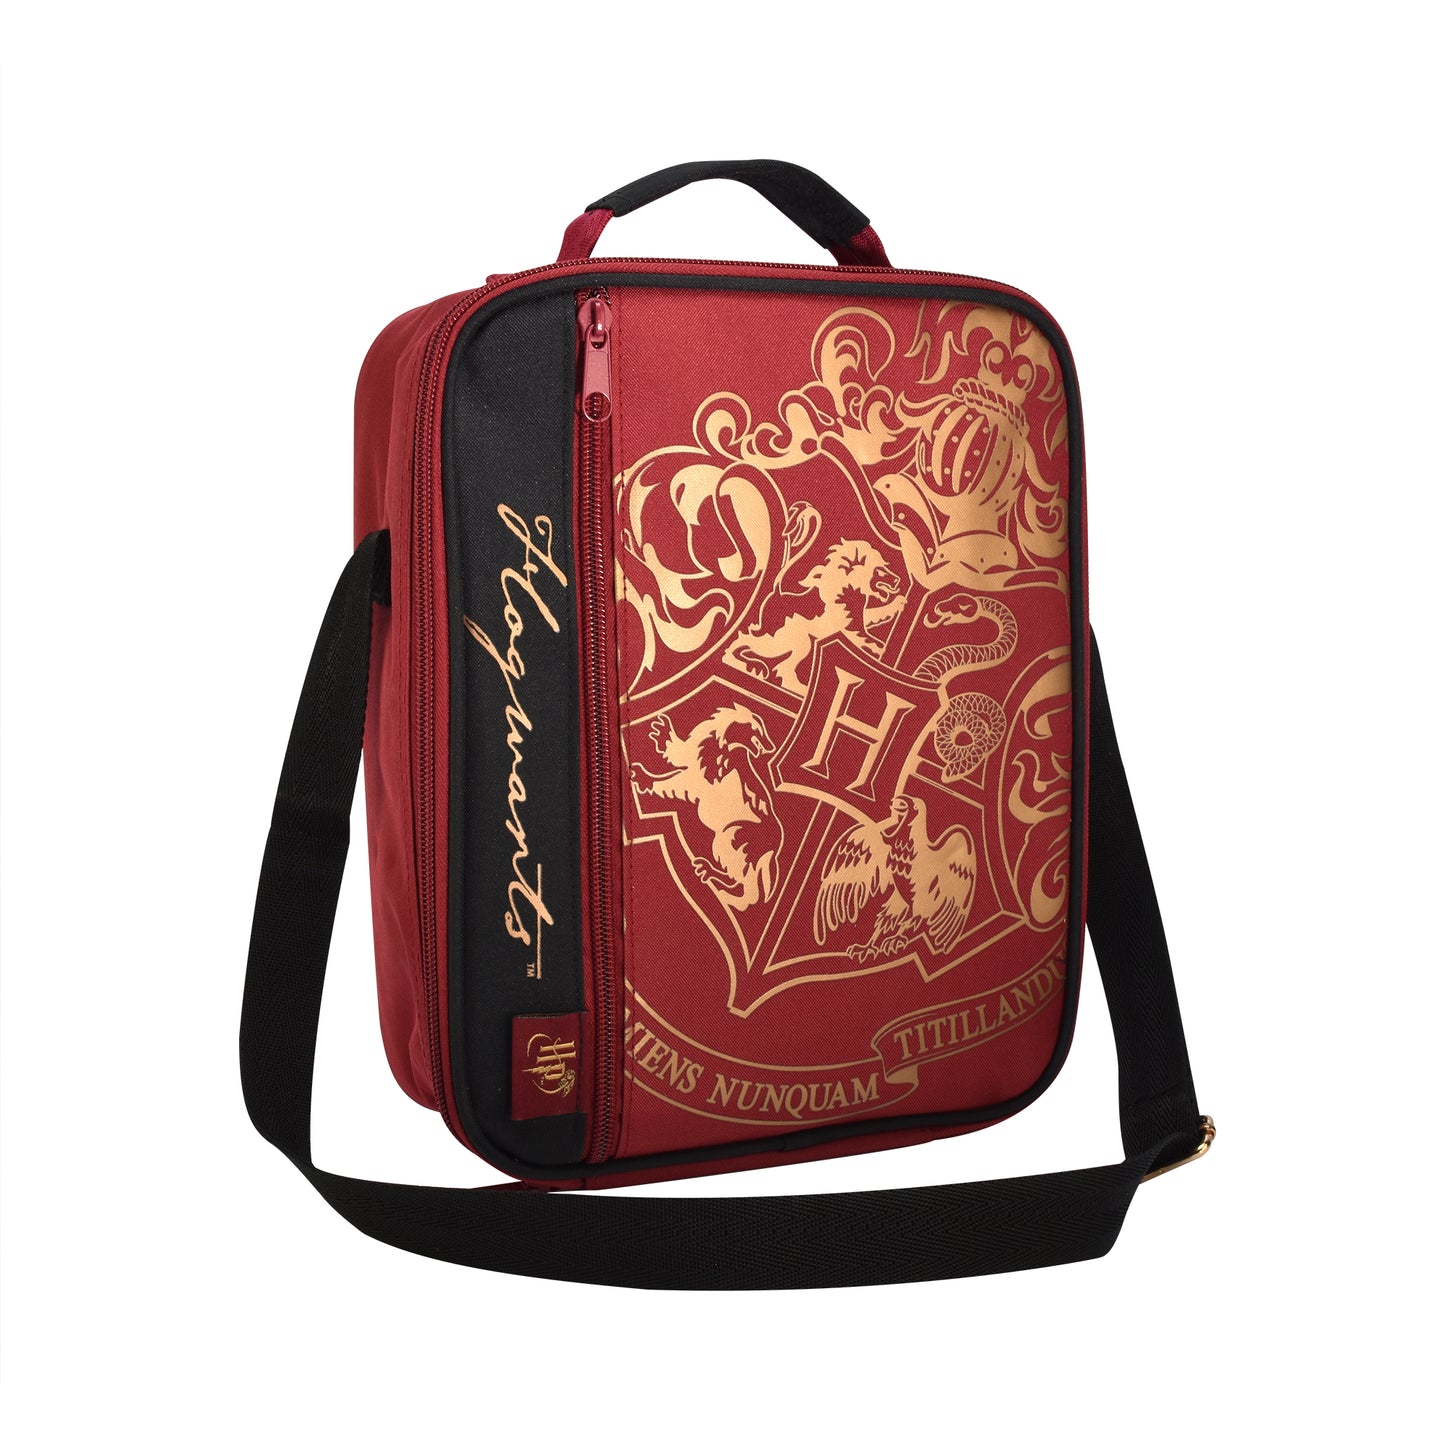 Harry Potter Deluxe 2 Pocket Lunch Bag Burgundy - Crest